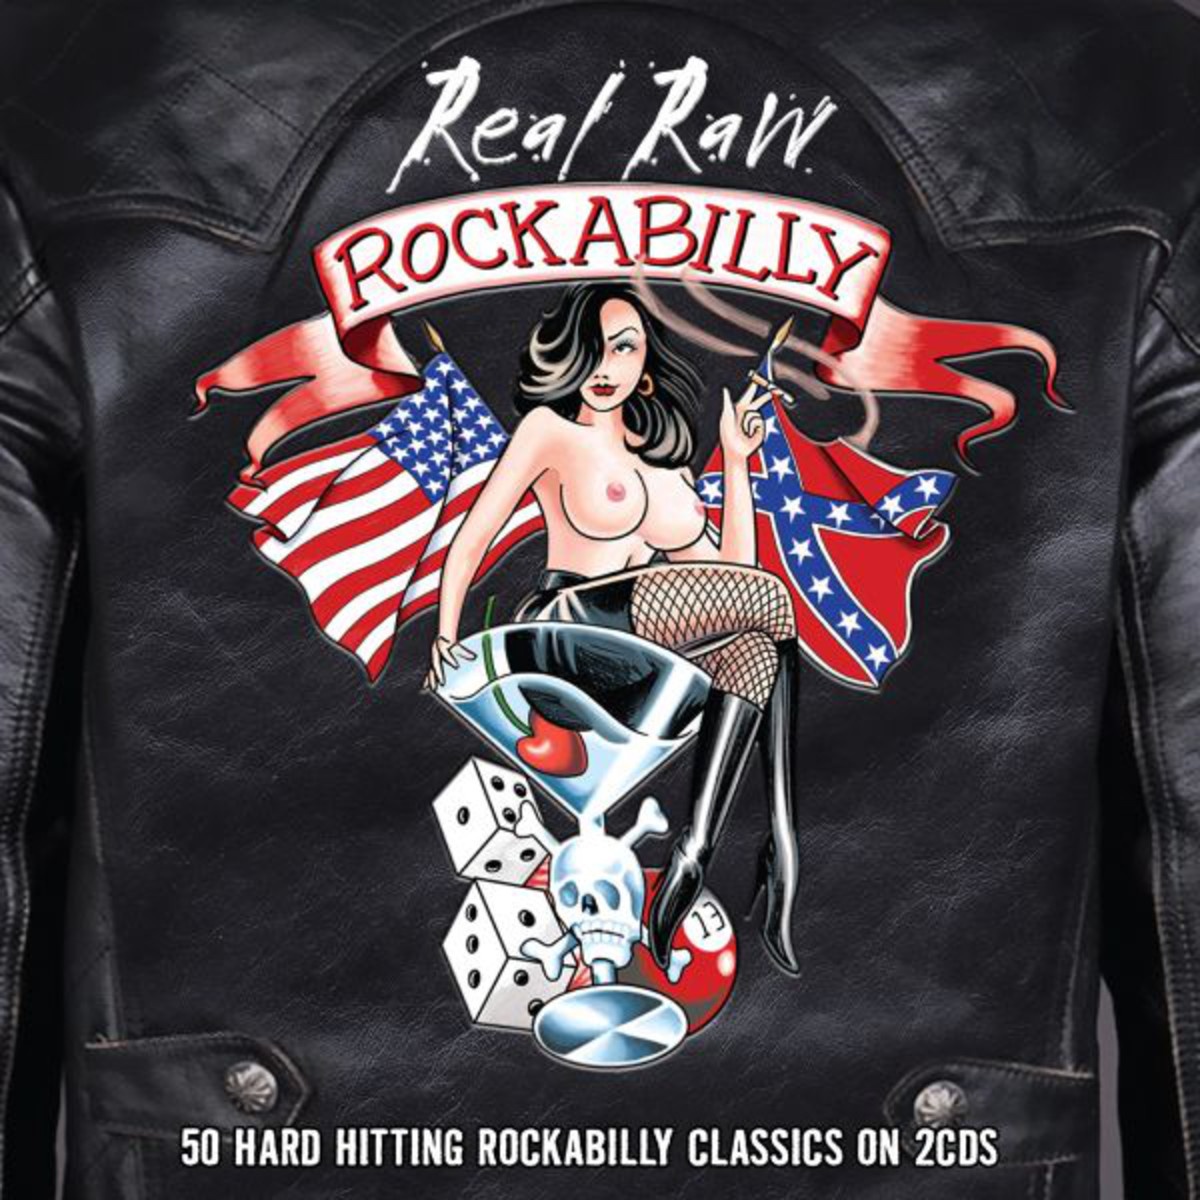 Real Raw Rockabilly